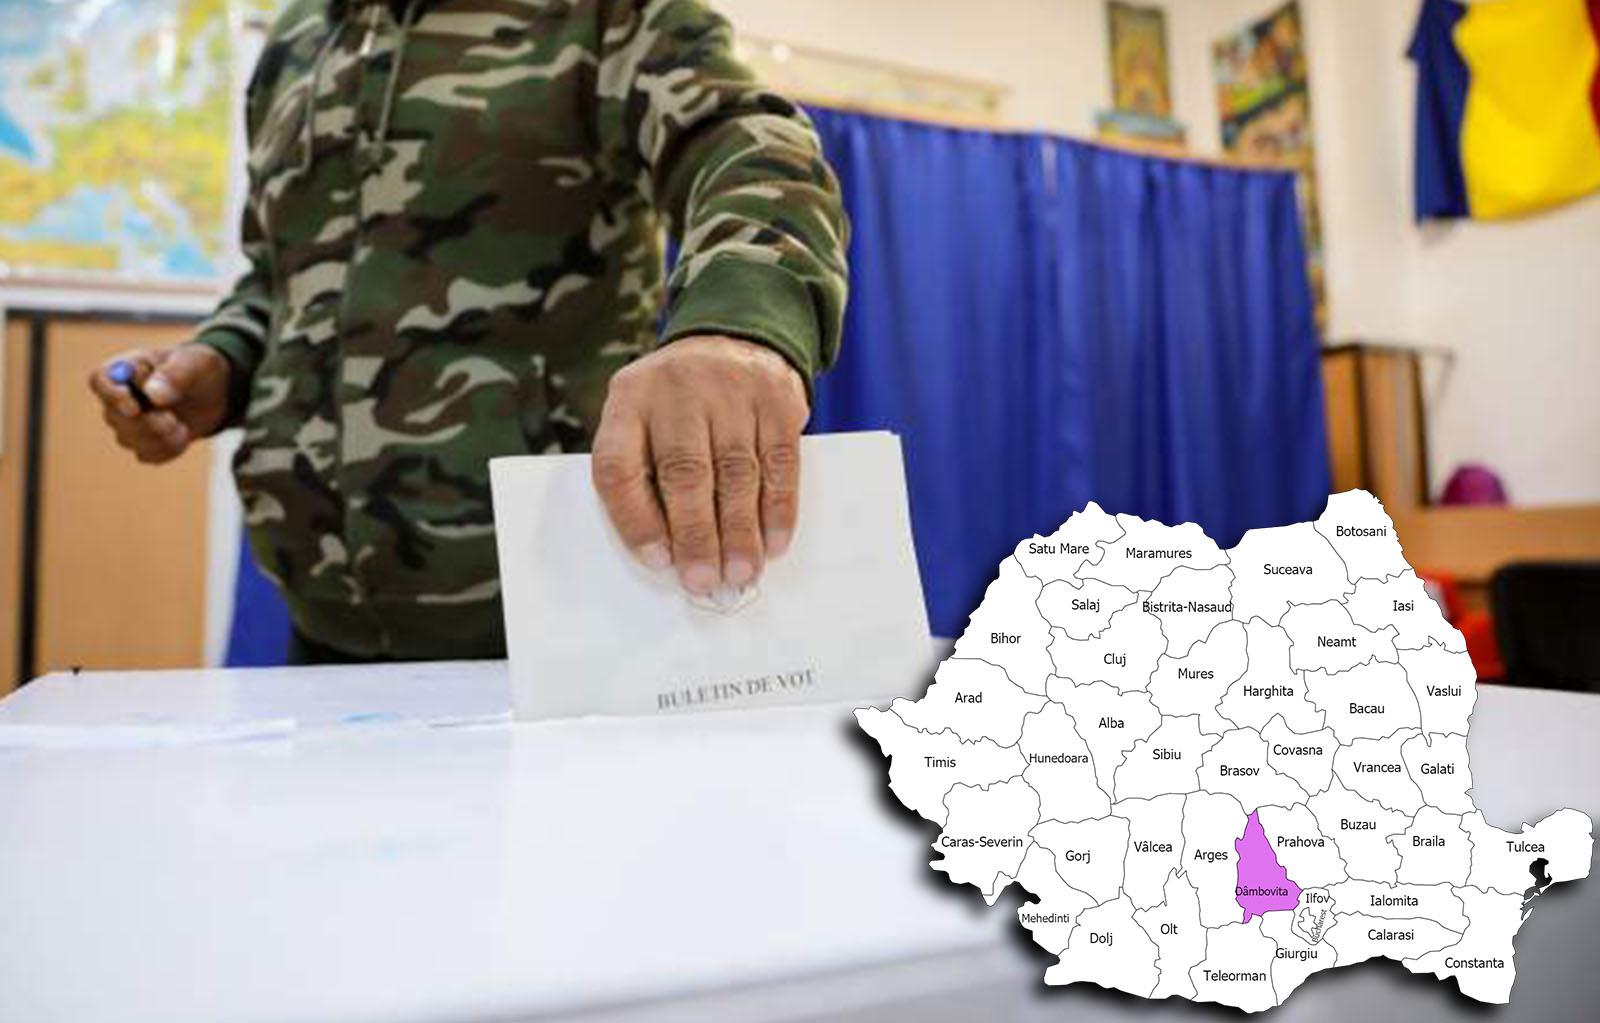 Rezultate alegeri parlamentare 2020 în județul Dâmbovița. Cine câștigă alegerile pentru Senat și Camera Deputaților